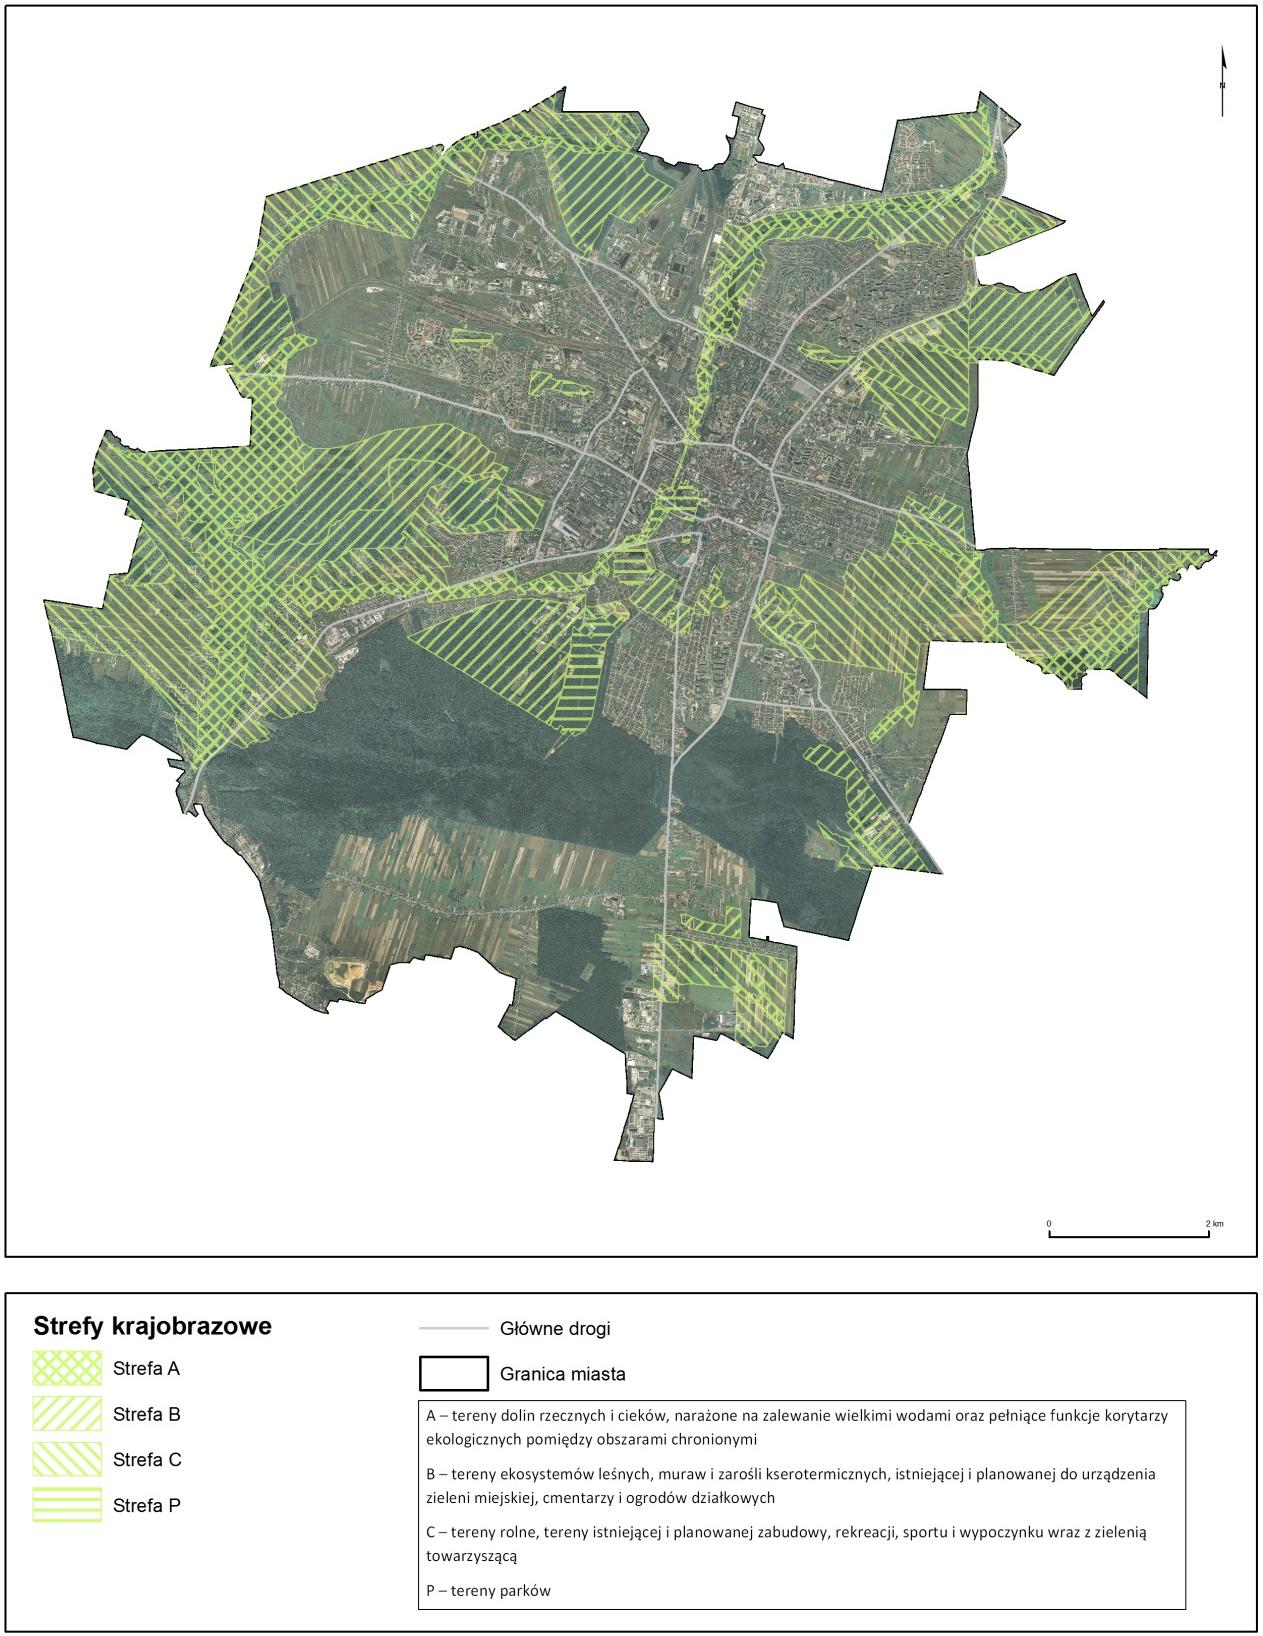 Rozdział: OCHRONA PRZYRODY Kielecki Obszar Chronionego Krajobrazu (KOChK) został utworzony na podstawie decyzji Rady Miejskiej w Kielcach w 2006 r.